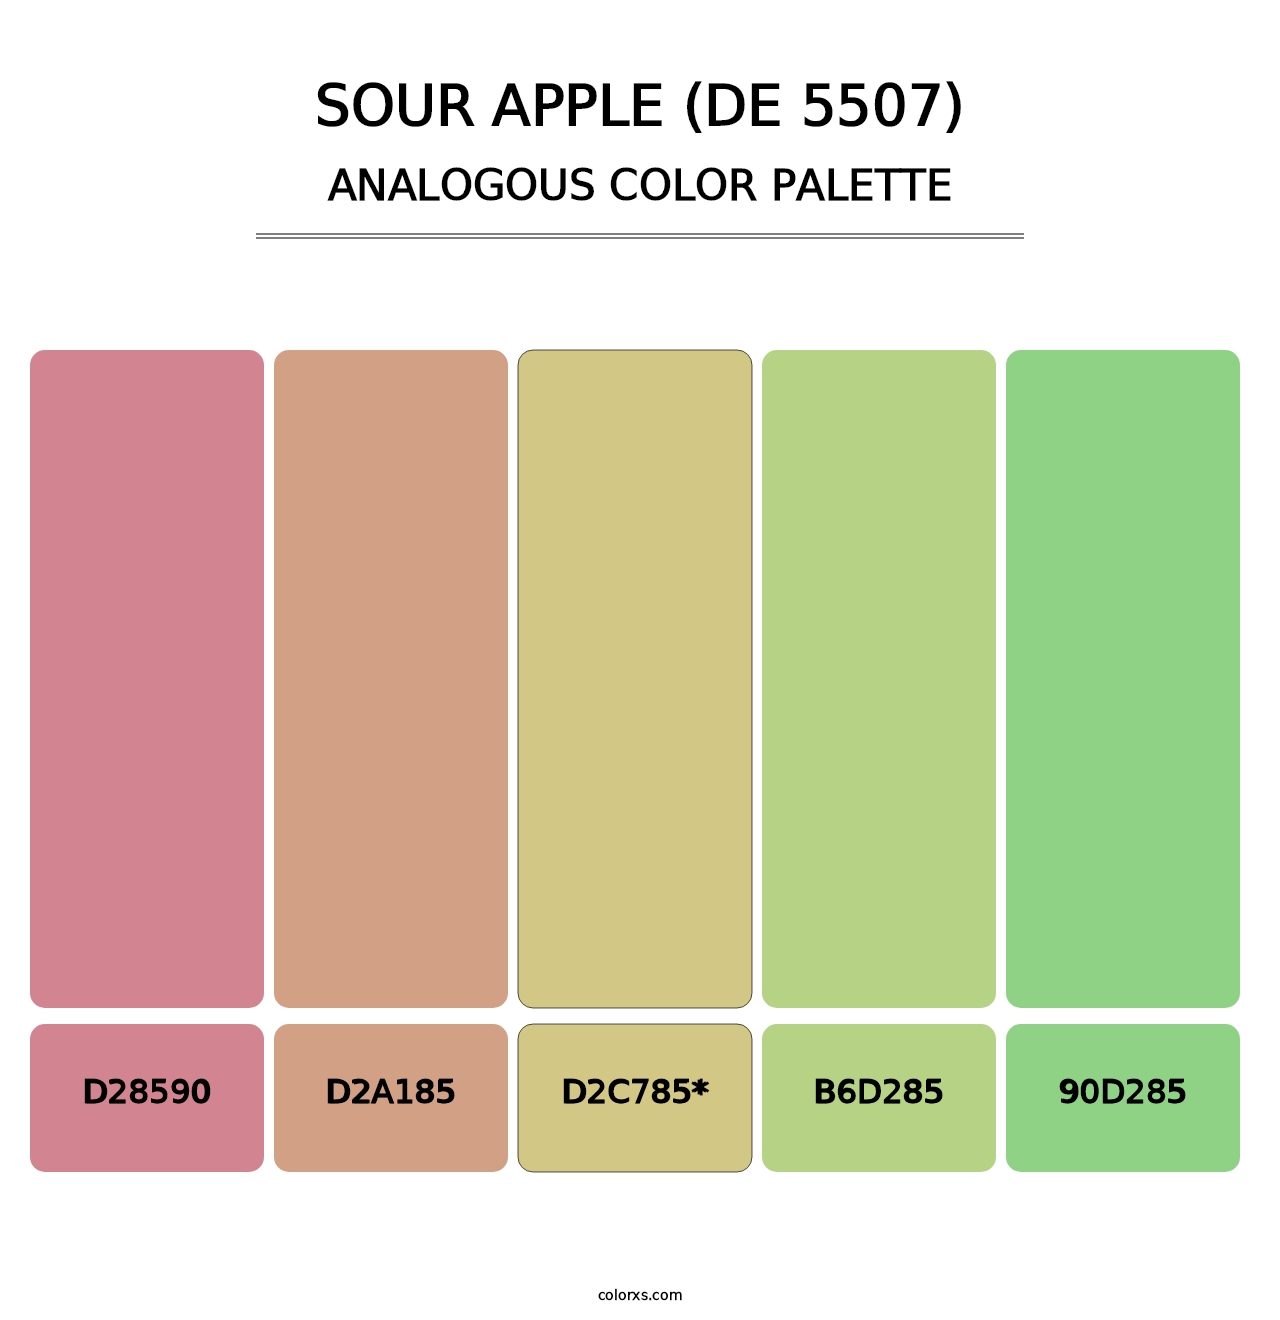 Sour Apple (DE 5507) - Analogous Color Palette